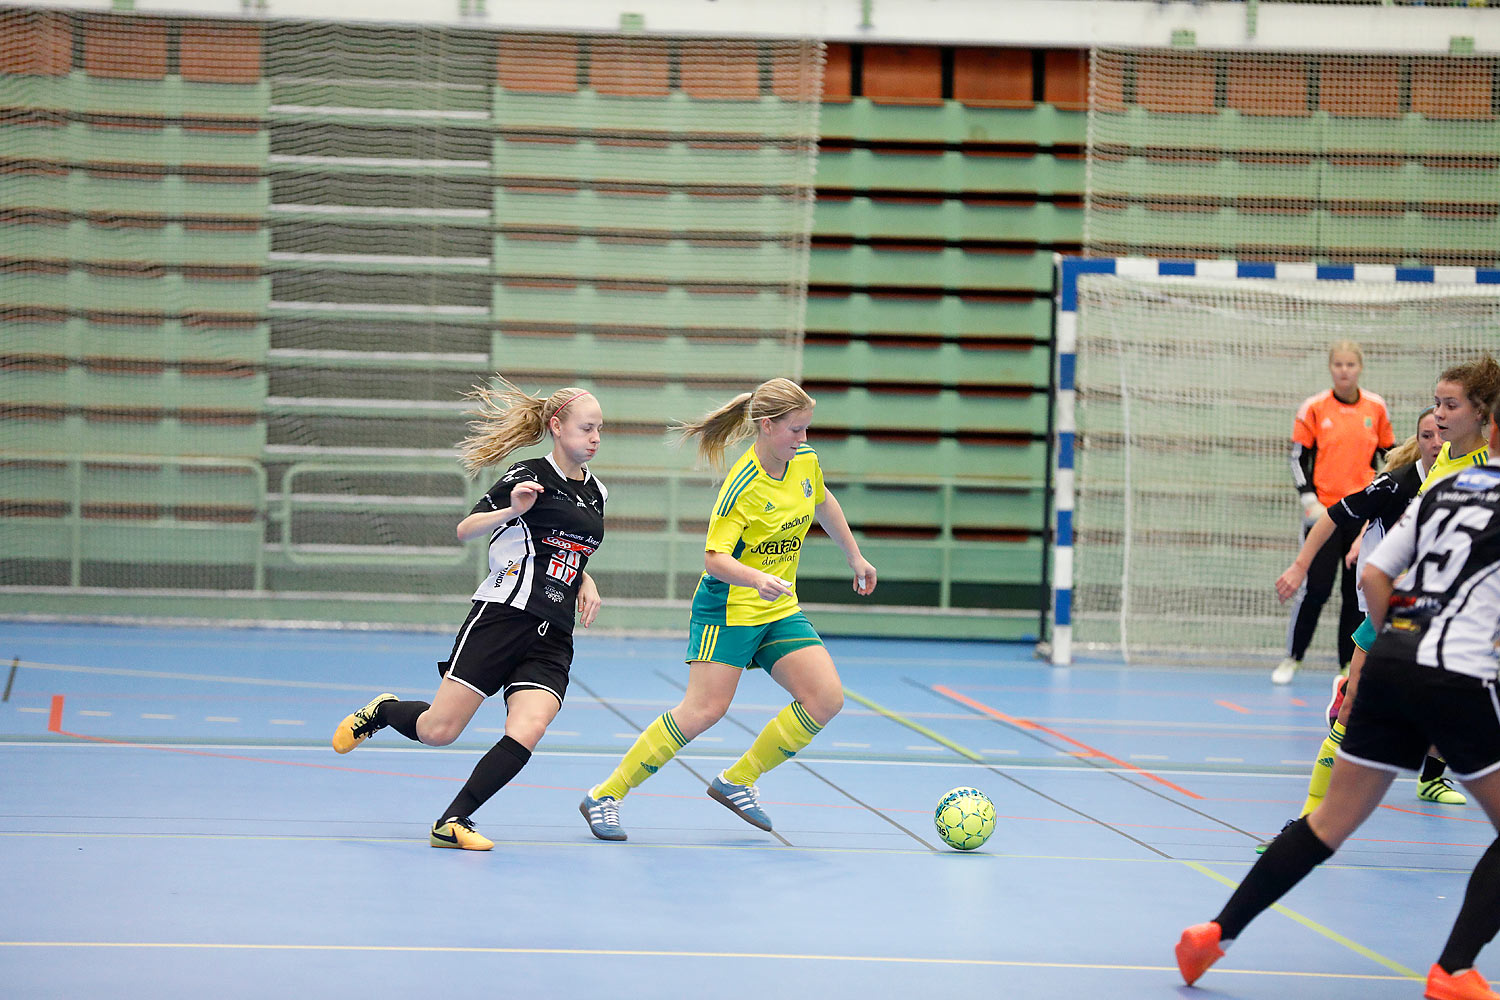 Skövde Futsalcup Damer Hertzöga BK 1-Skövde KIK,dam,Arena Skövde,Skövde,Sverige,Skövde Futsalcup 2016,Futsal,2016,141738